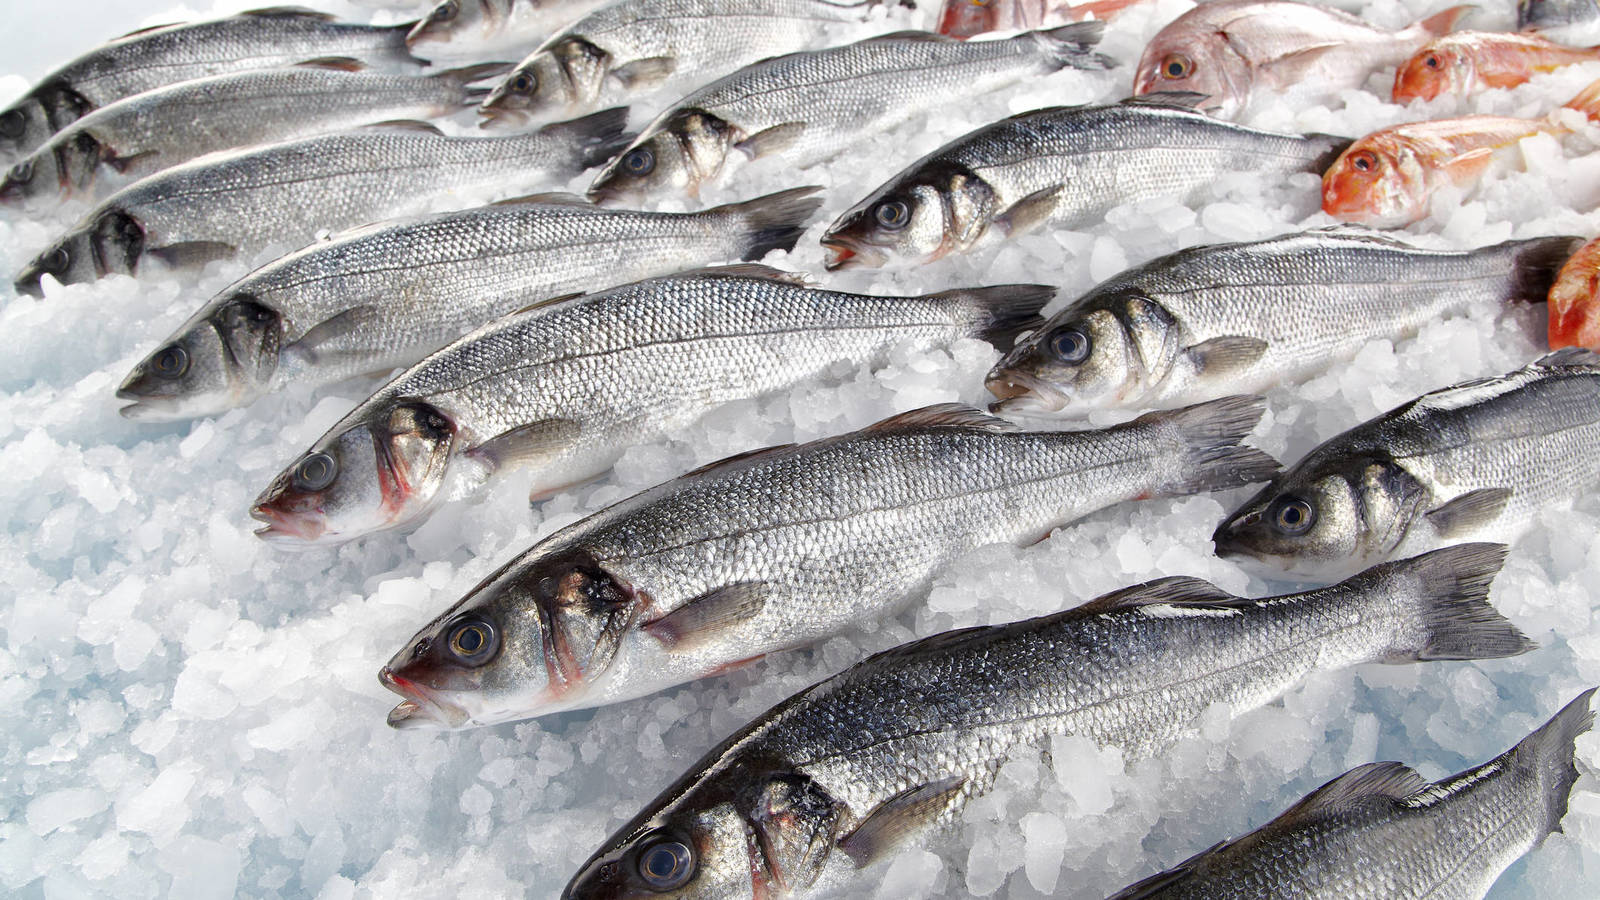 comes mucho pescado ten cuidado asi puede afectar a tu salud